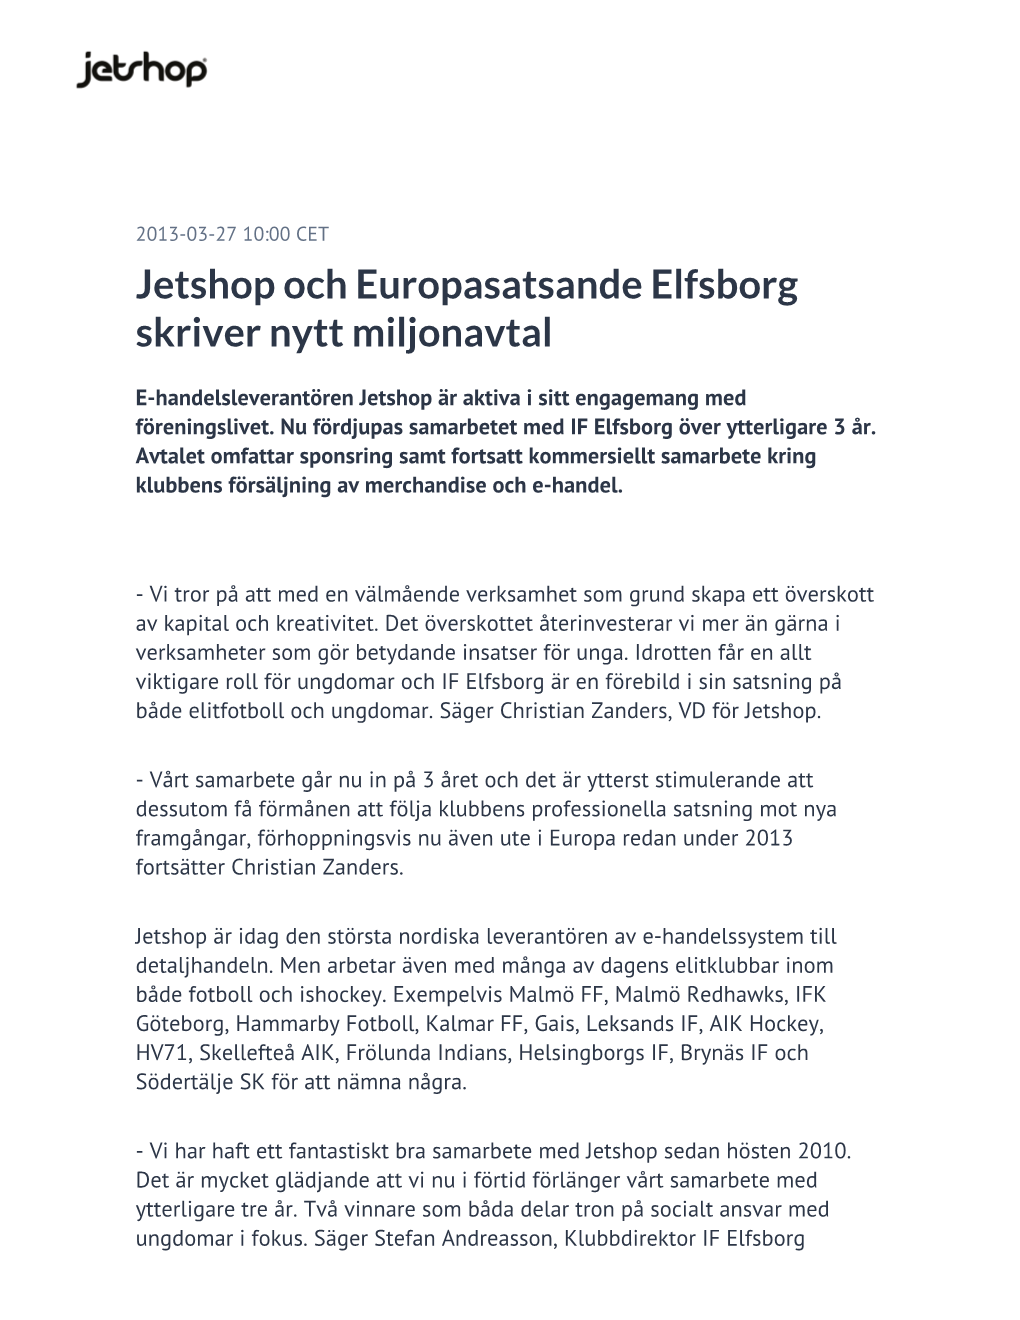 Jetshop Och Europasatsande Elfsborg Skriver Nytt Miljonavtal